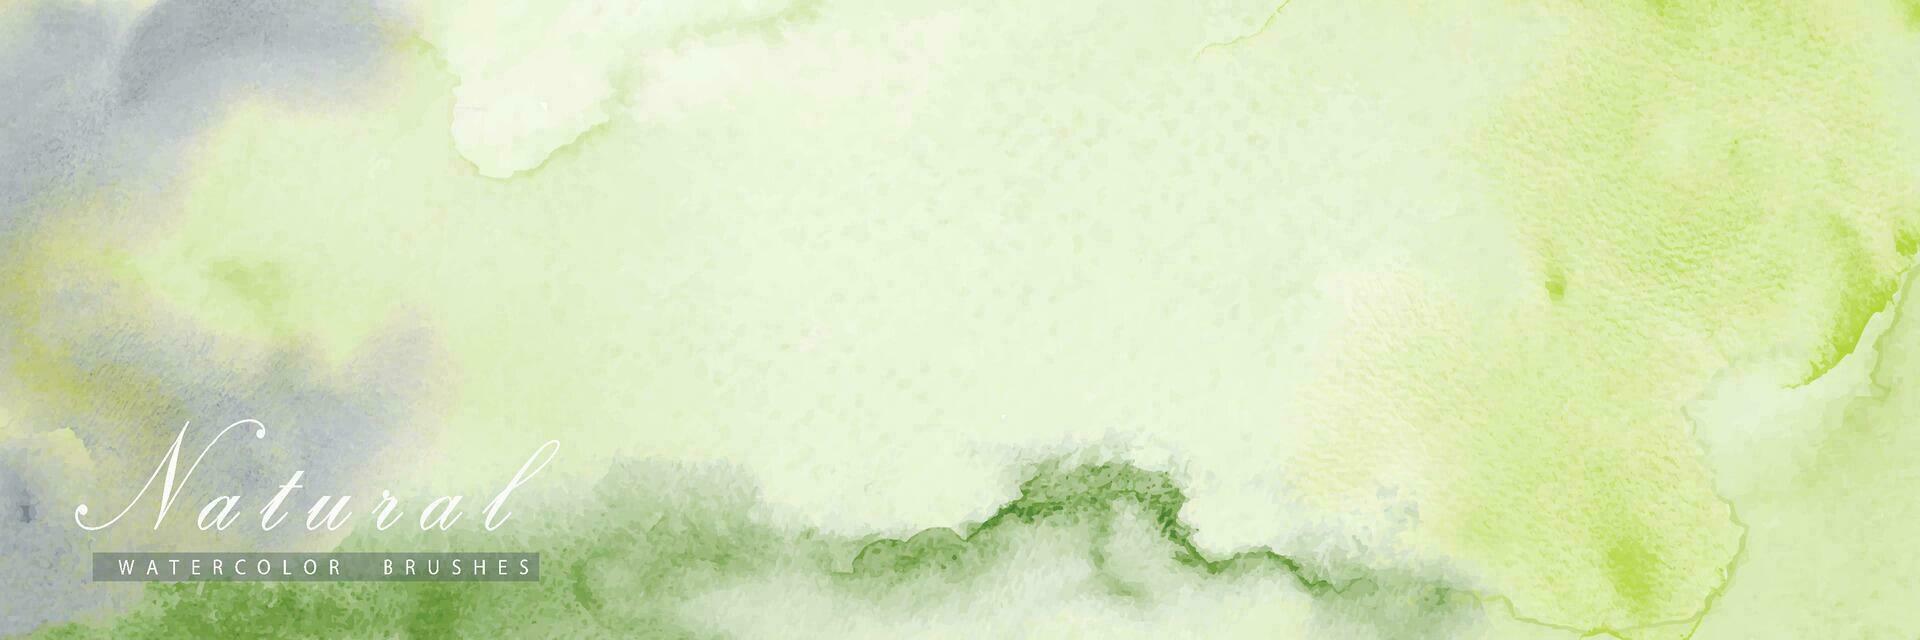 abstrato horizontal fundo projetado com verde aguarela manchas vetor